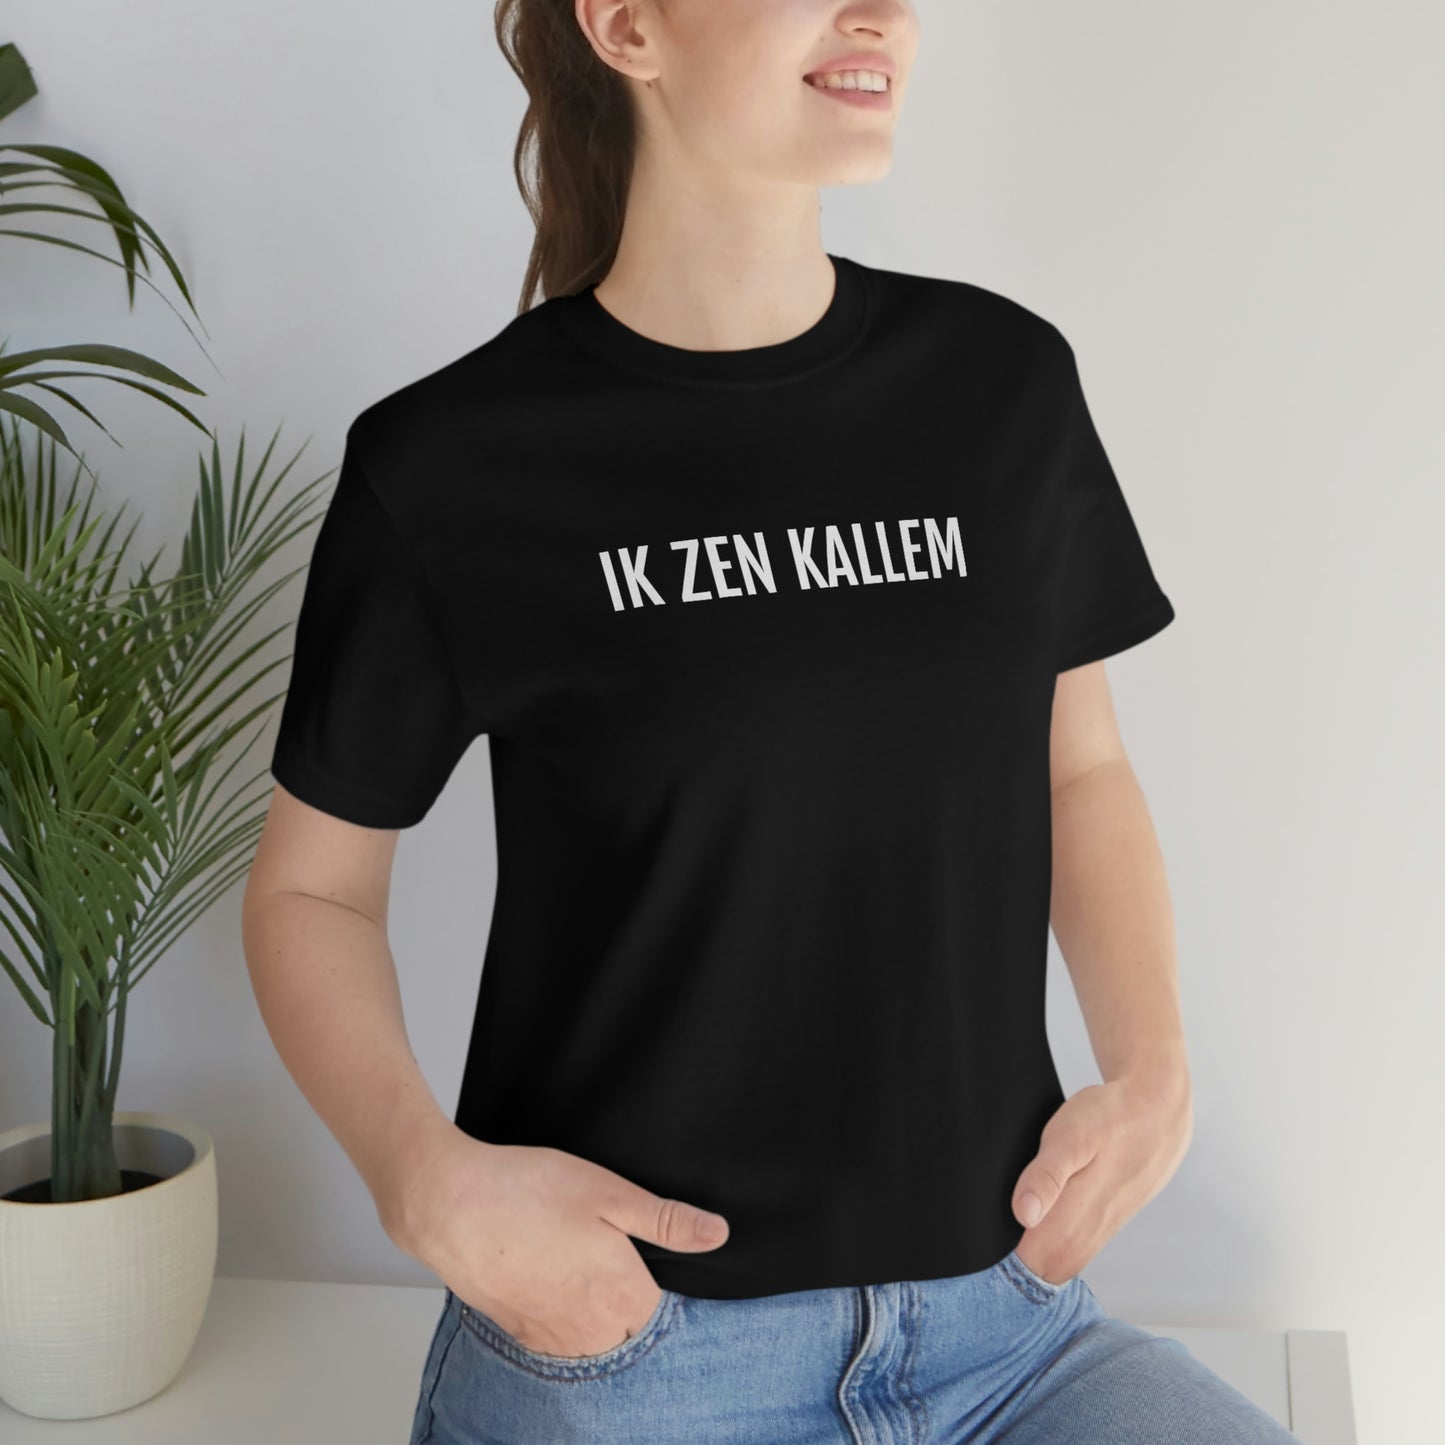 IK ZEN KALLEM | Unisex T-Shirt uit Antwerpen